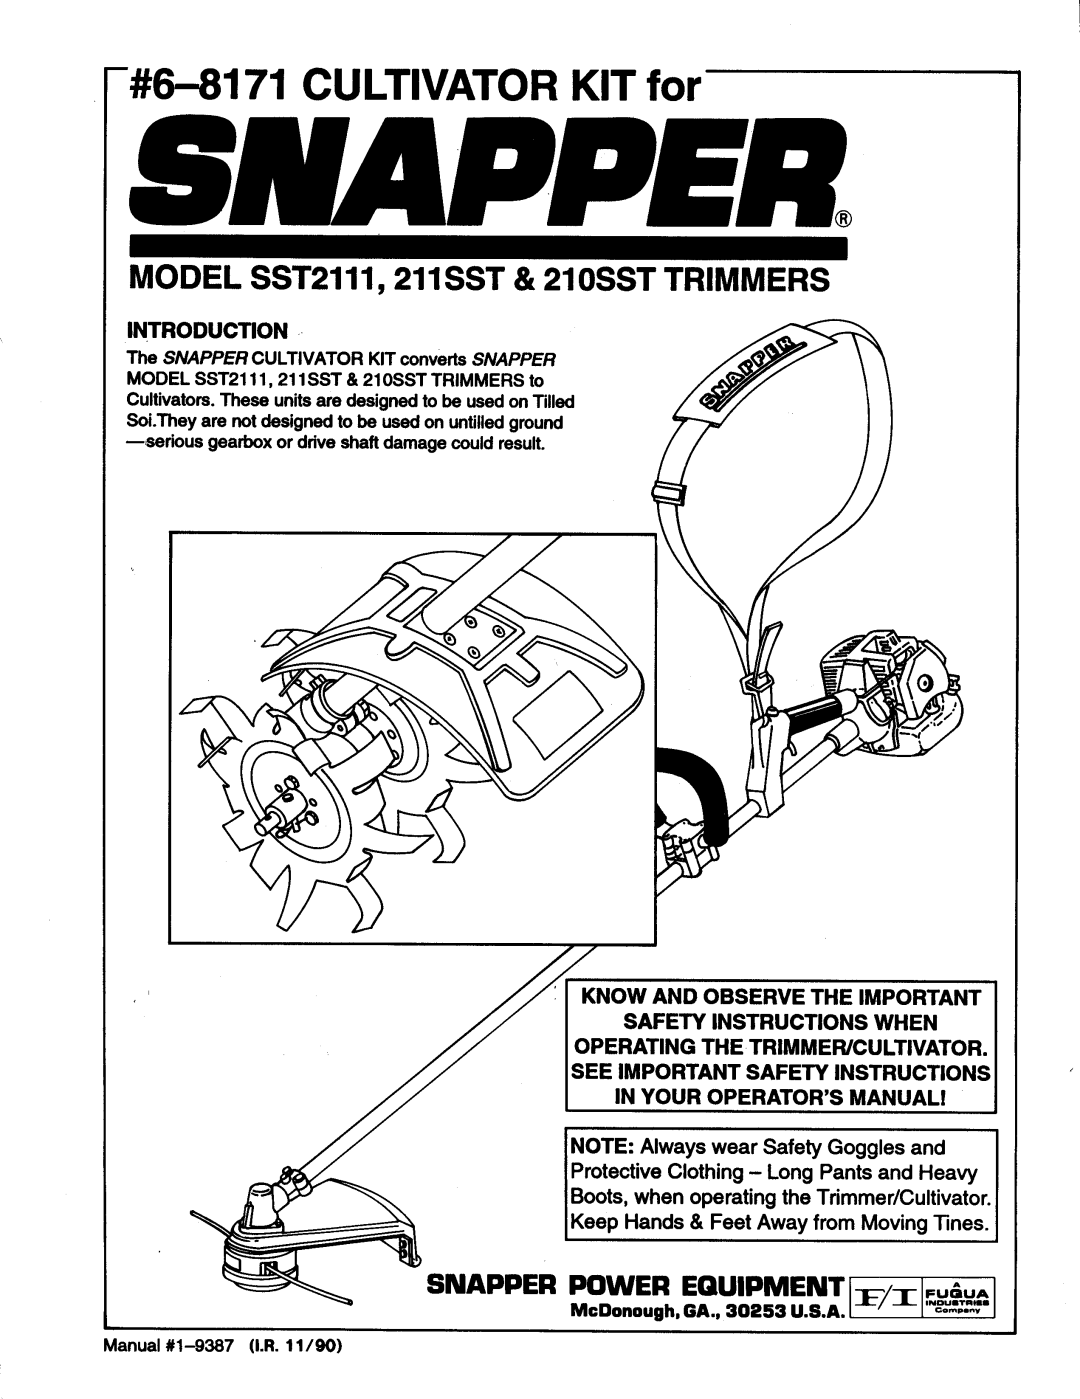 Snapper SST2111, 21SST, 211SST manual 